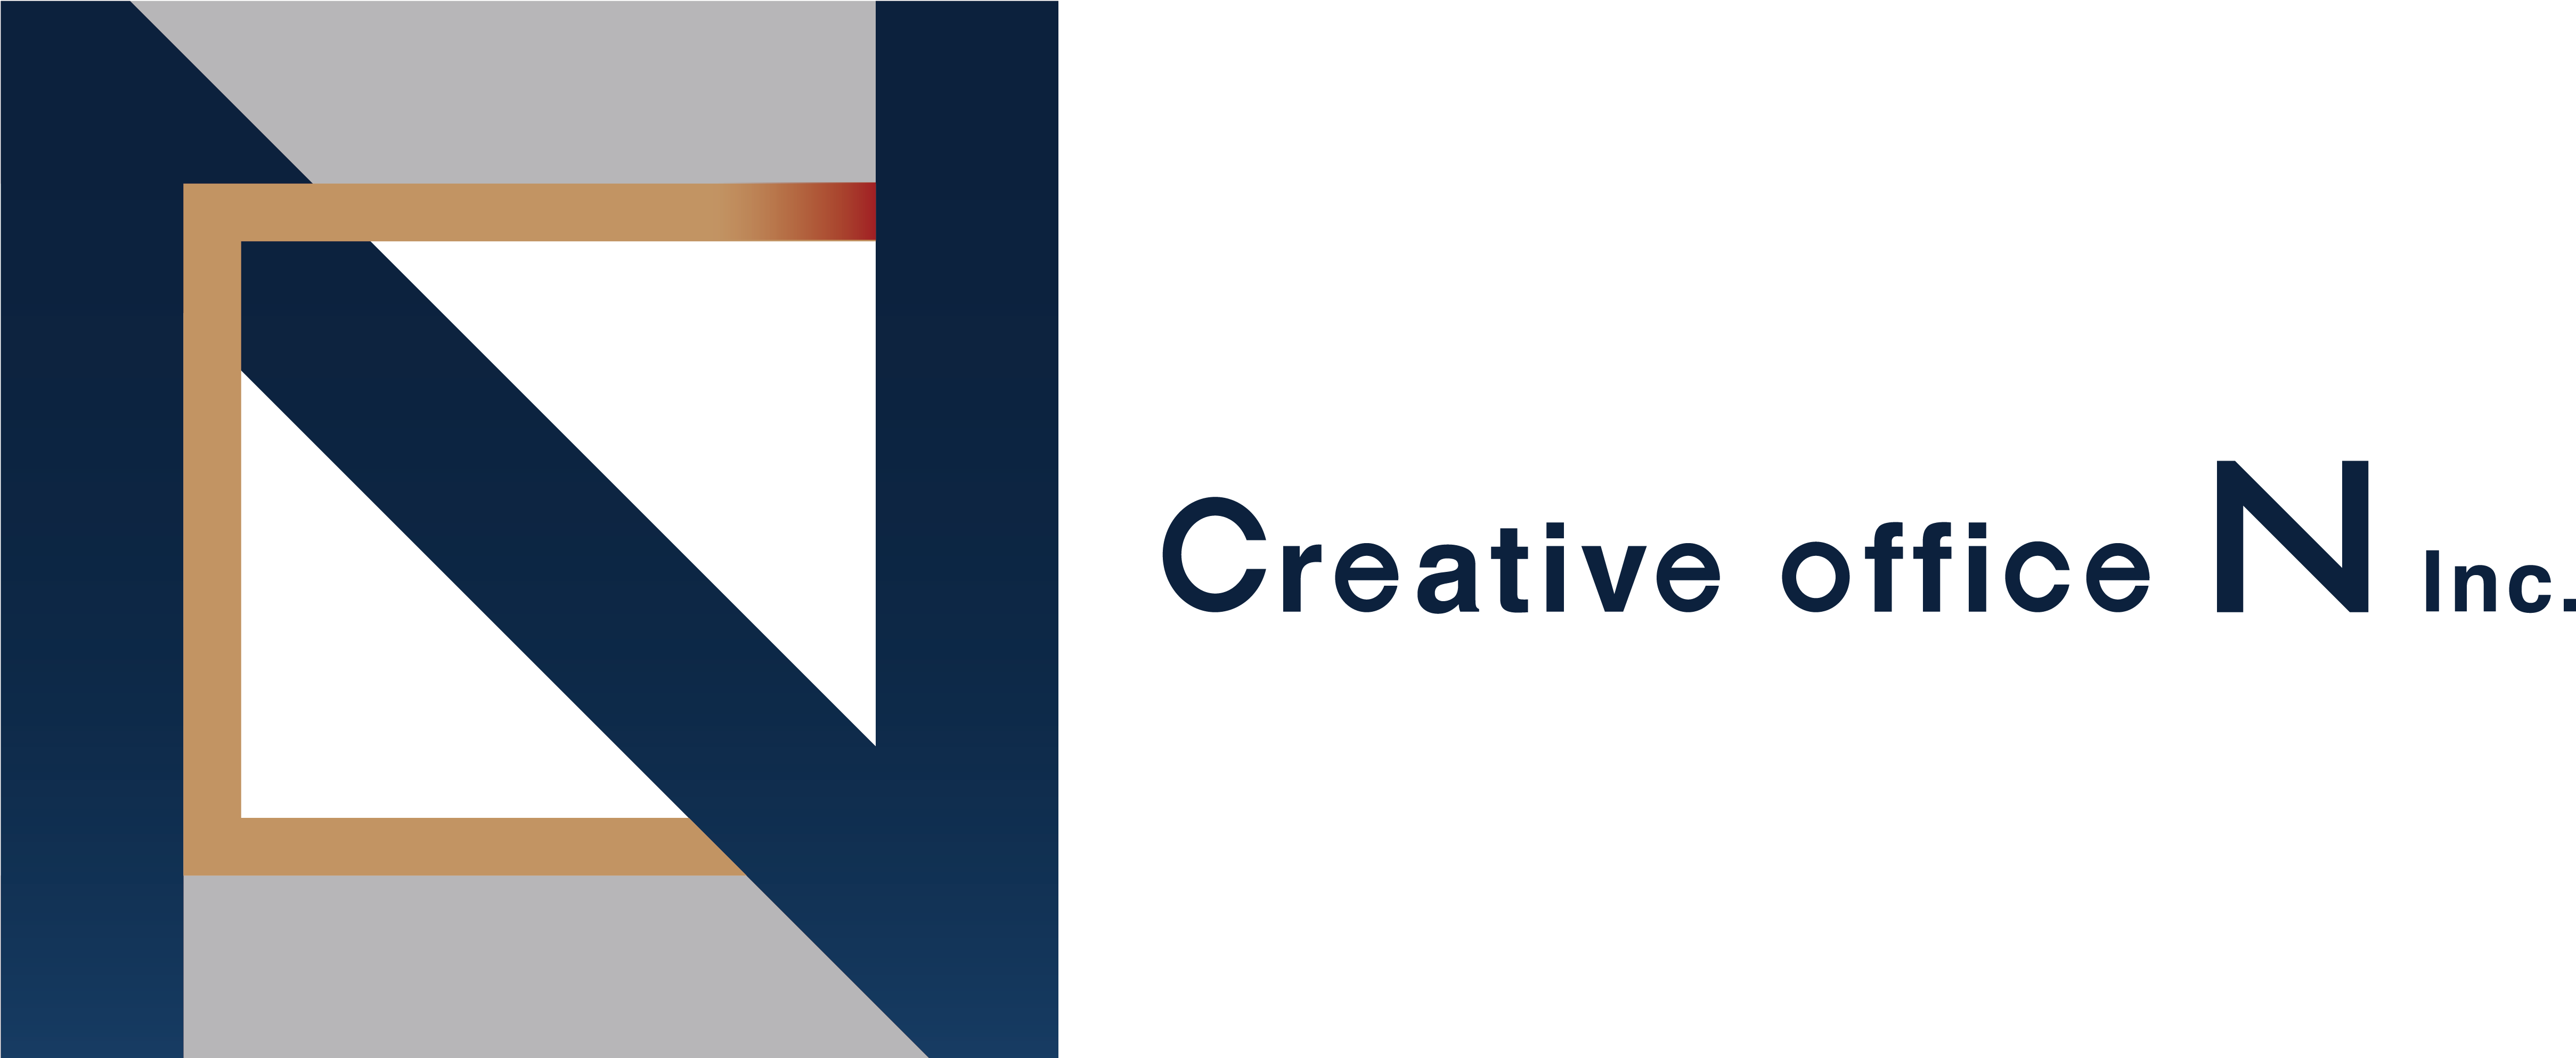 株式会社 Creative office Nの株式会社 Creative office Nサービス